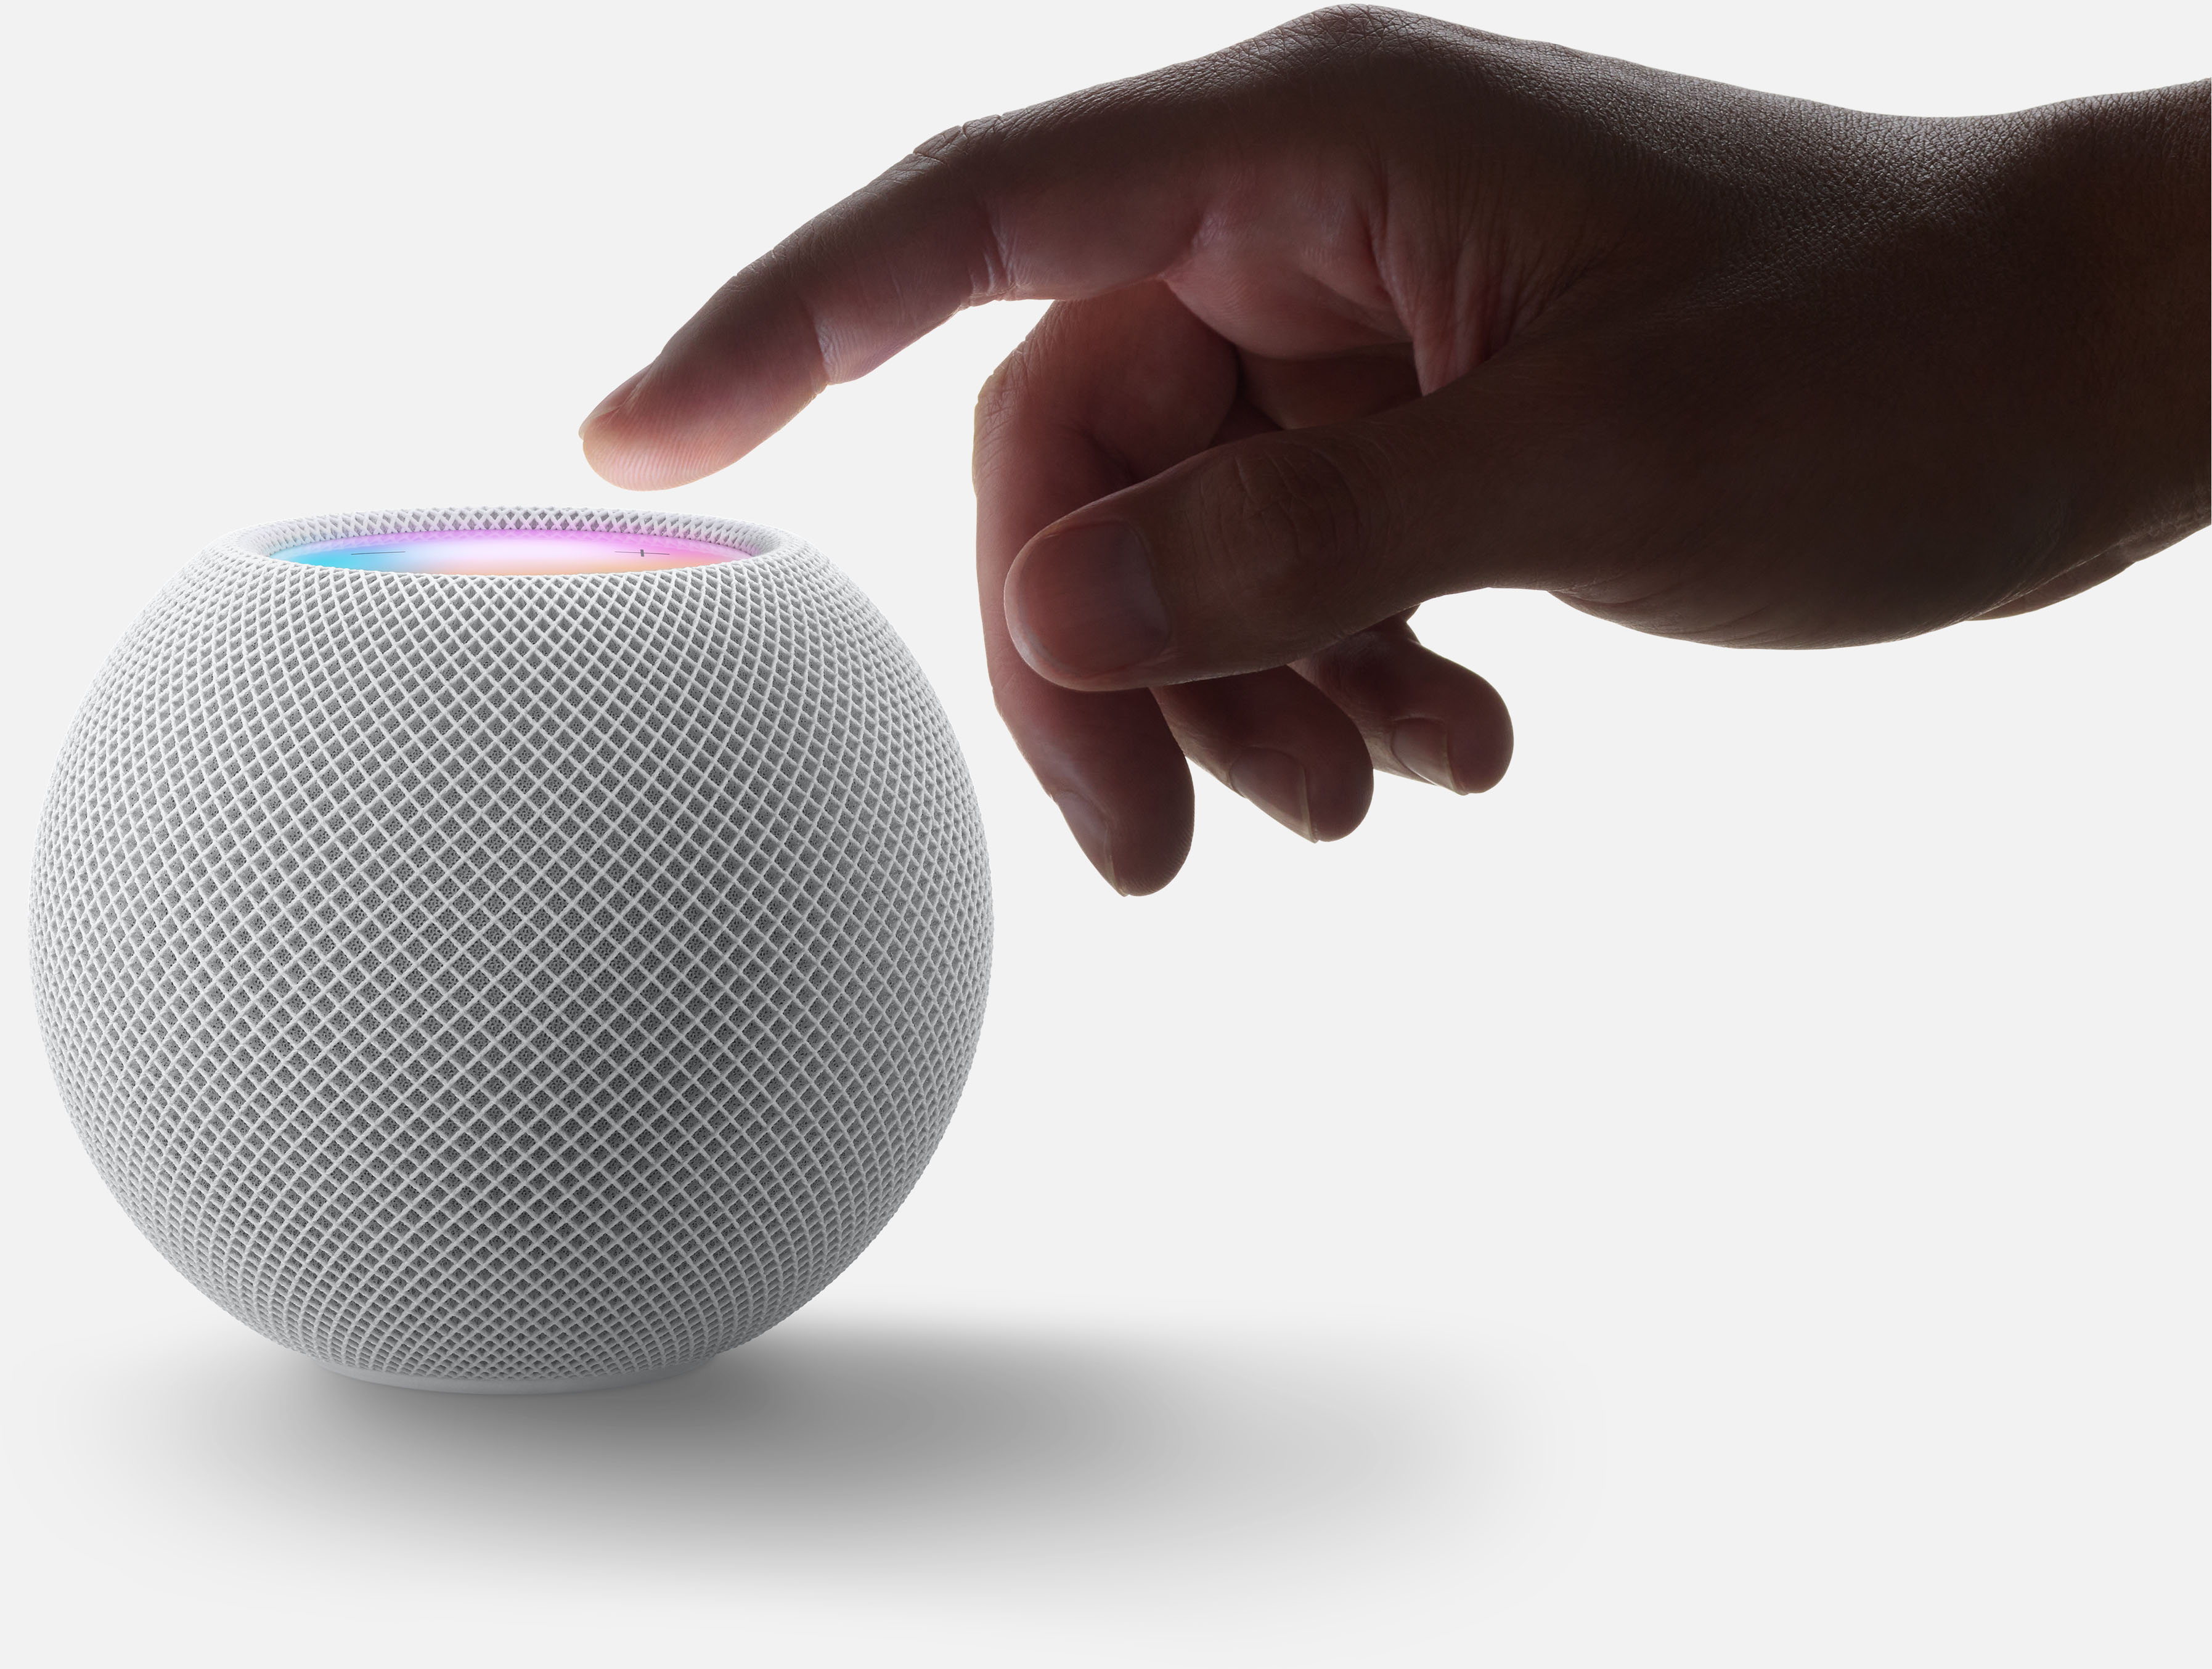 Apple kills off original HomePod, will focus on $99 HomePod Mini - CNET